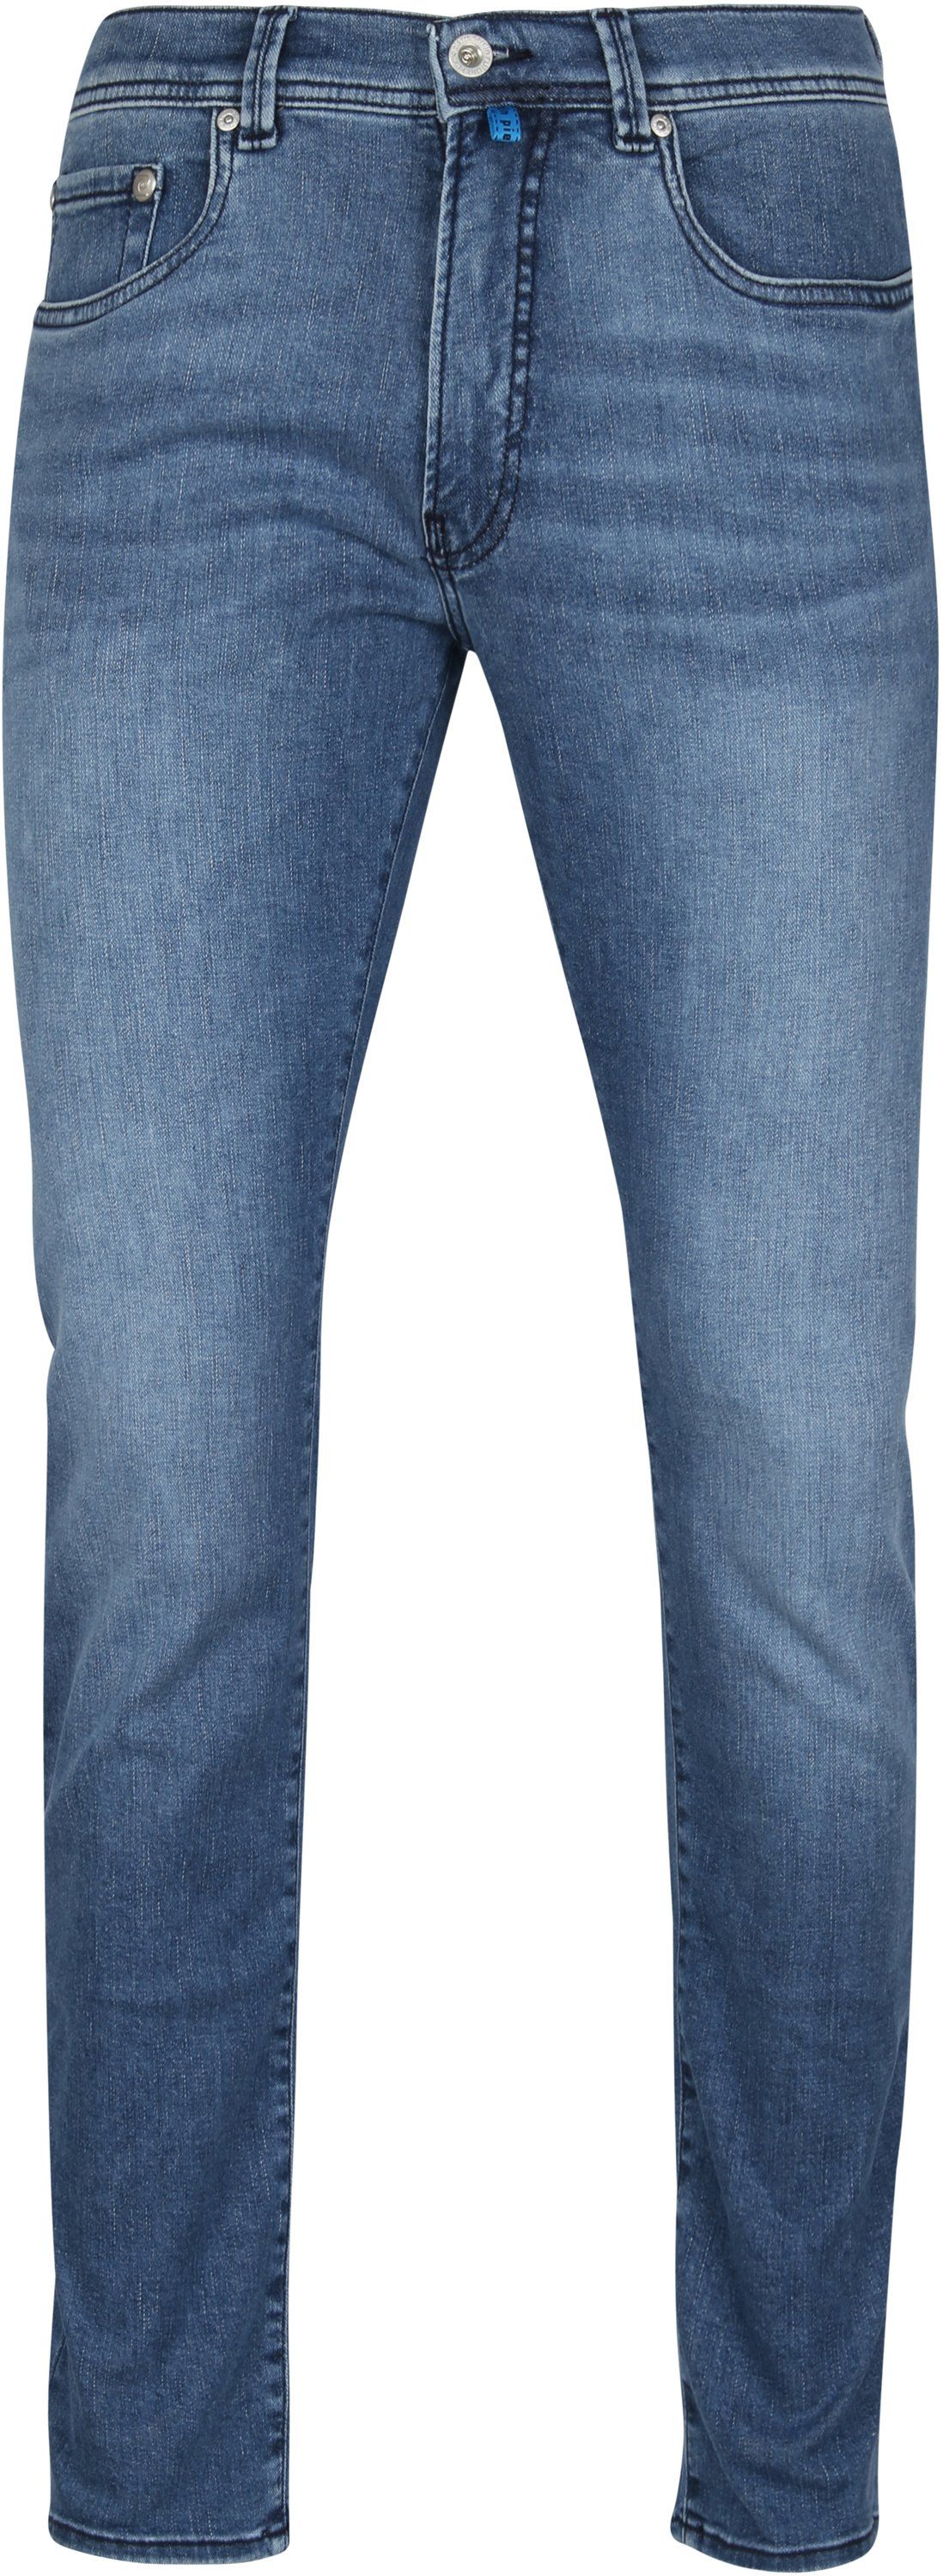 Pierre Cardin Jeans Lyon Tapered Future Flex Blue size W 35